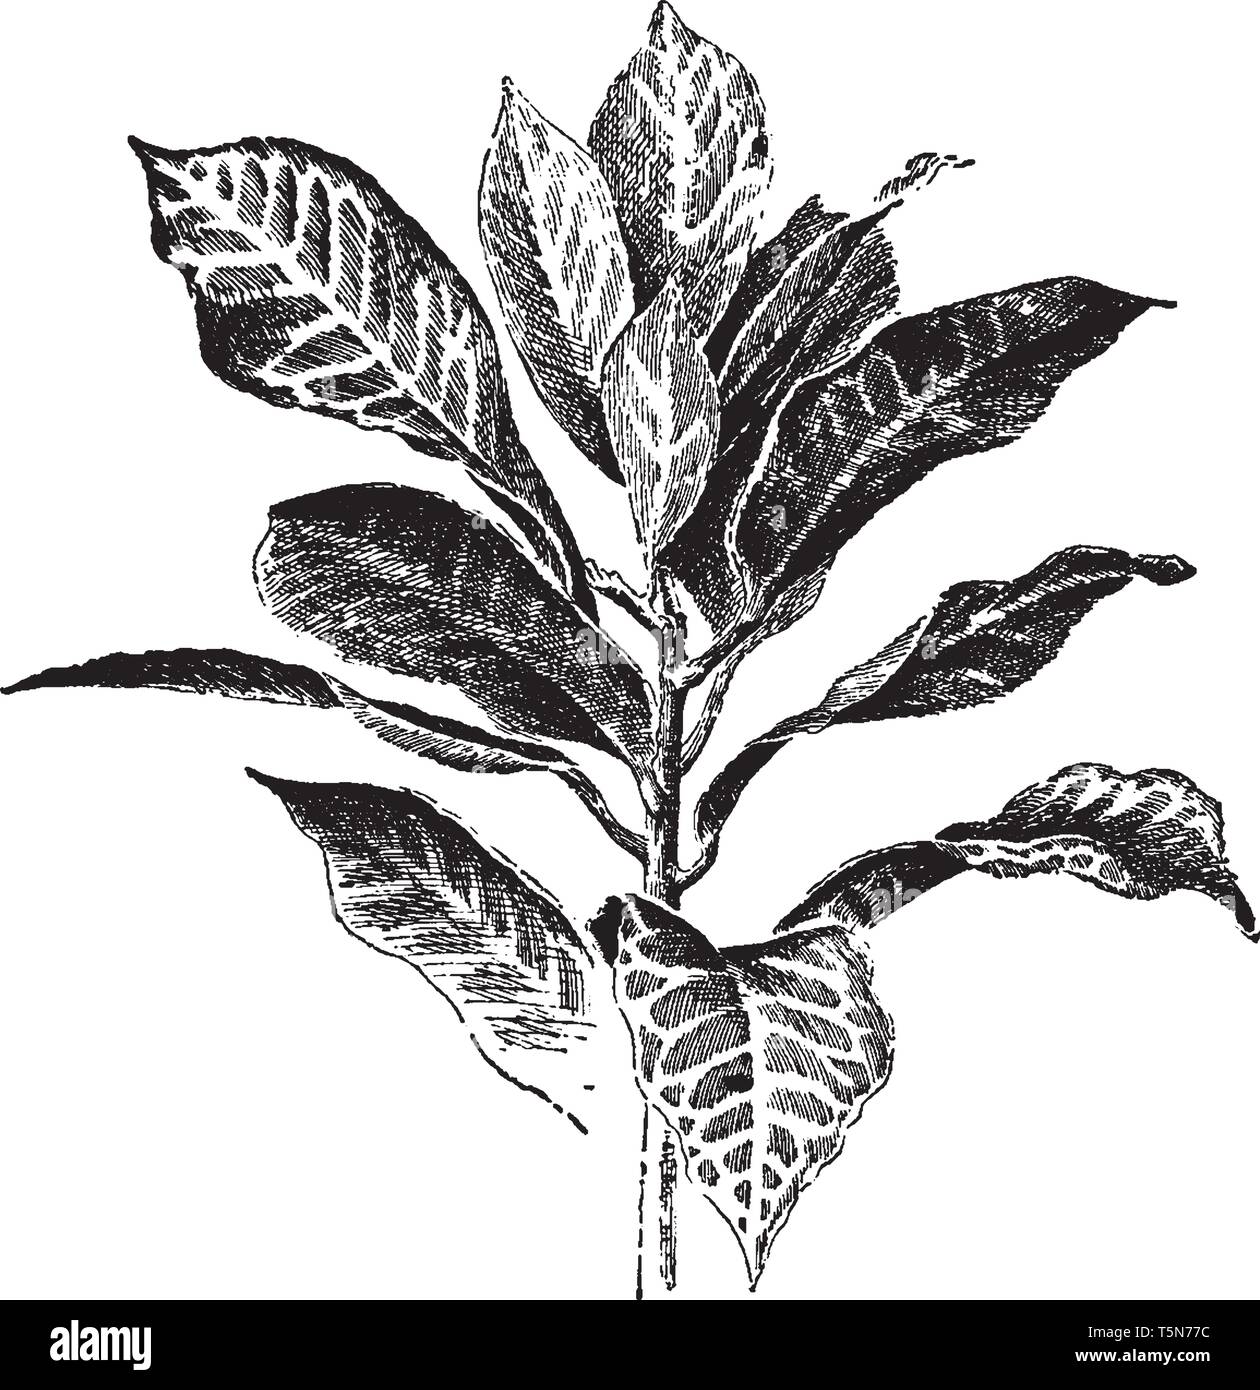 Es ist Immergrüne, holzige Pflanze. Einfache Blätter gefleckt mit Weiß, Gelb oder Rot, vintage Strichzeichnung oder Gravur Abbildung. Stock Vektor